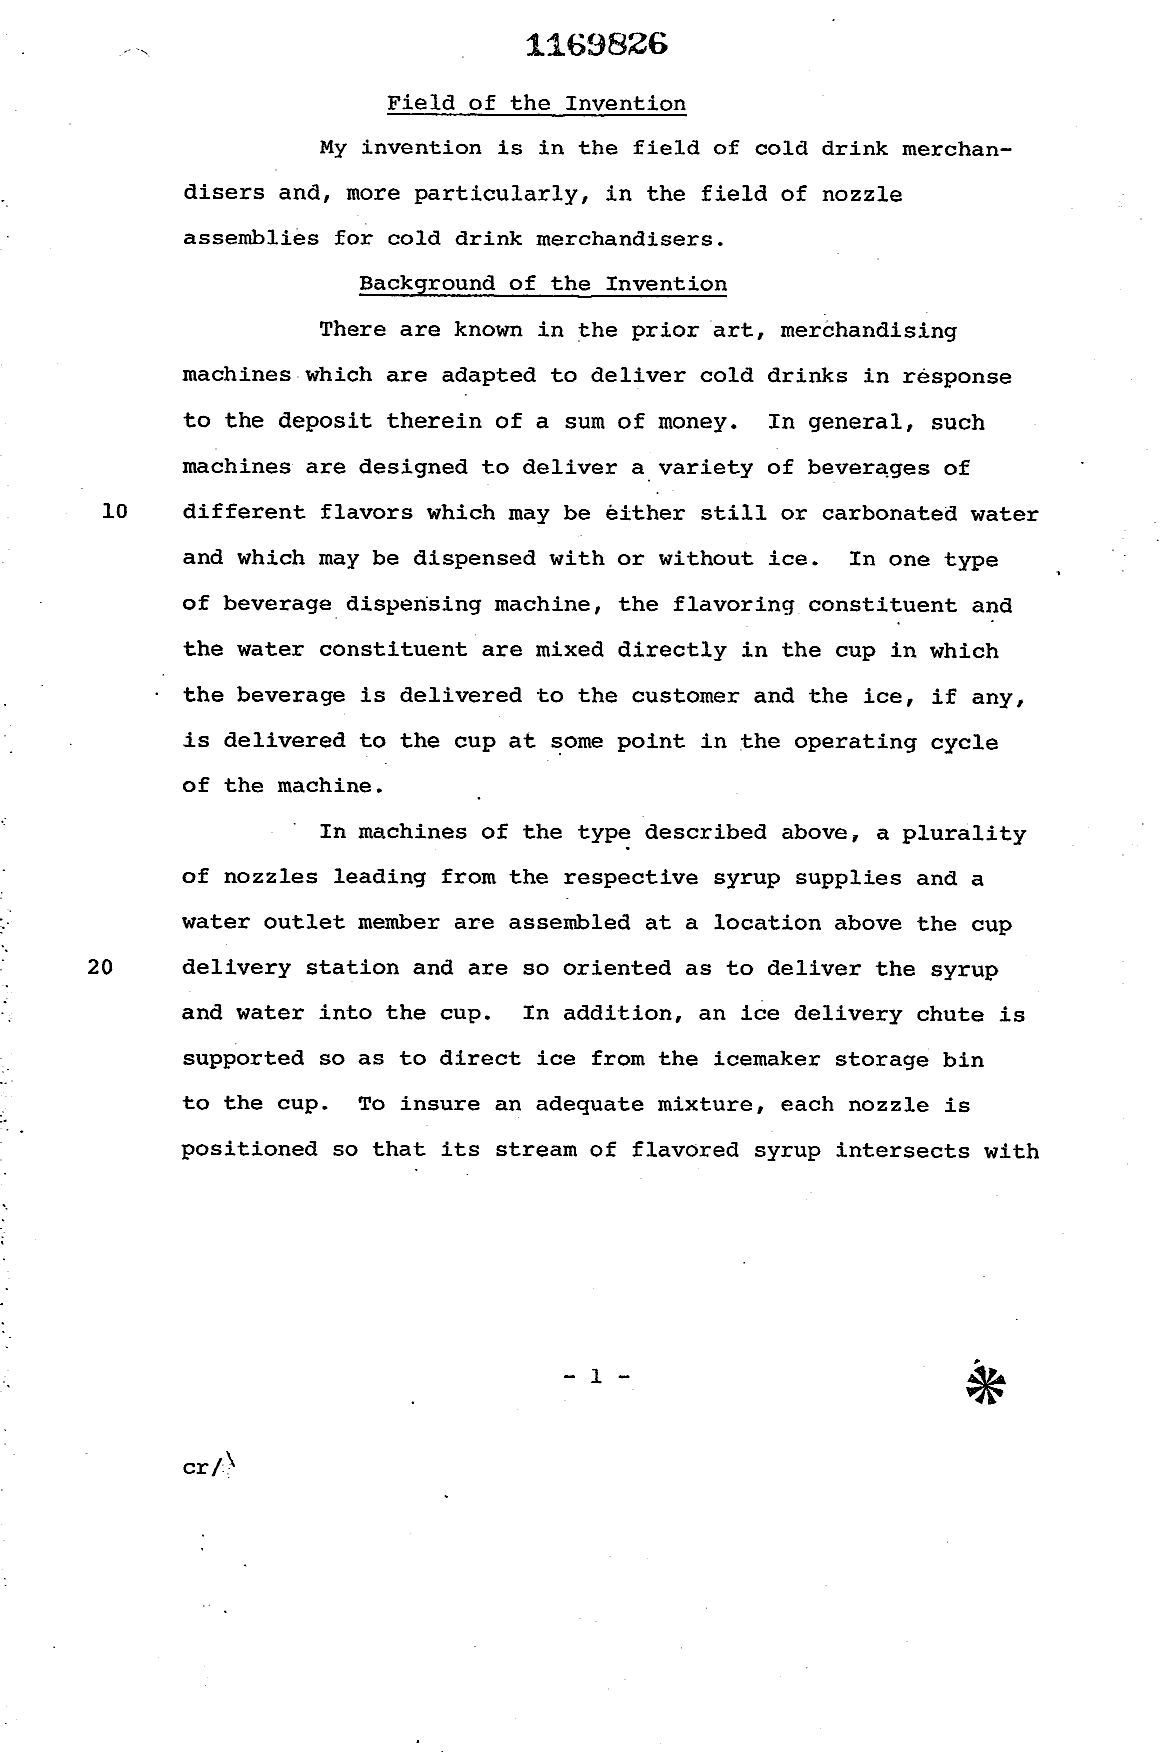 Canadian Patent Document 1169826. Description 19931208. Image 1 of 9